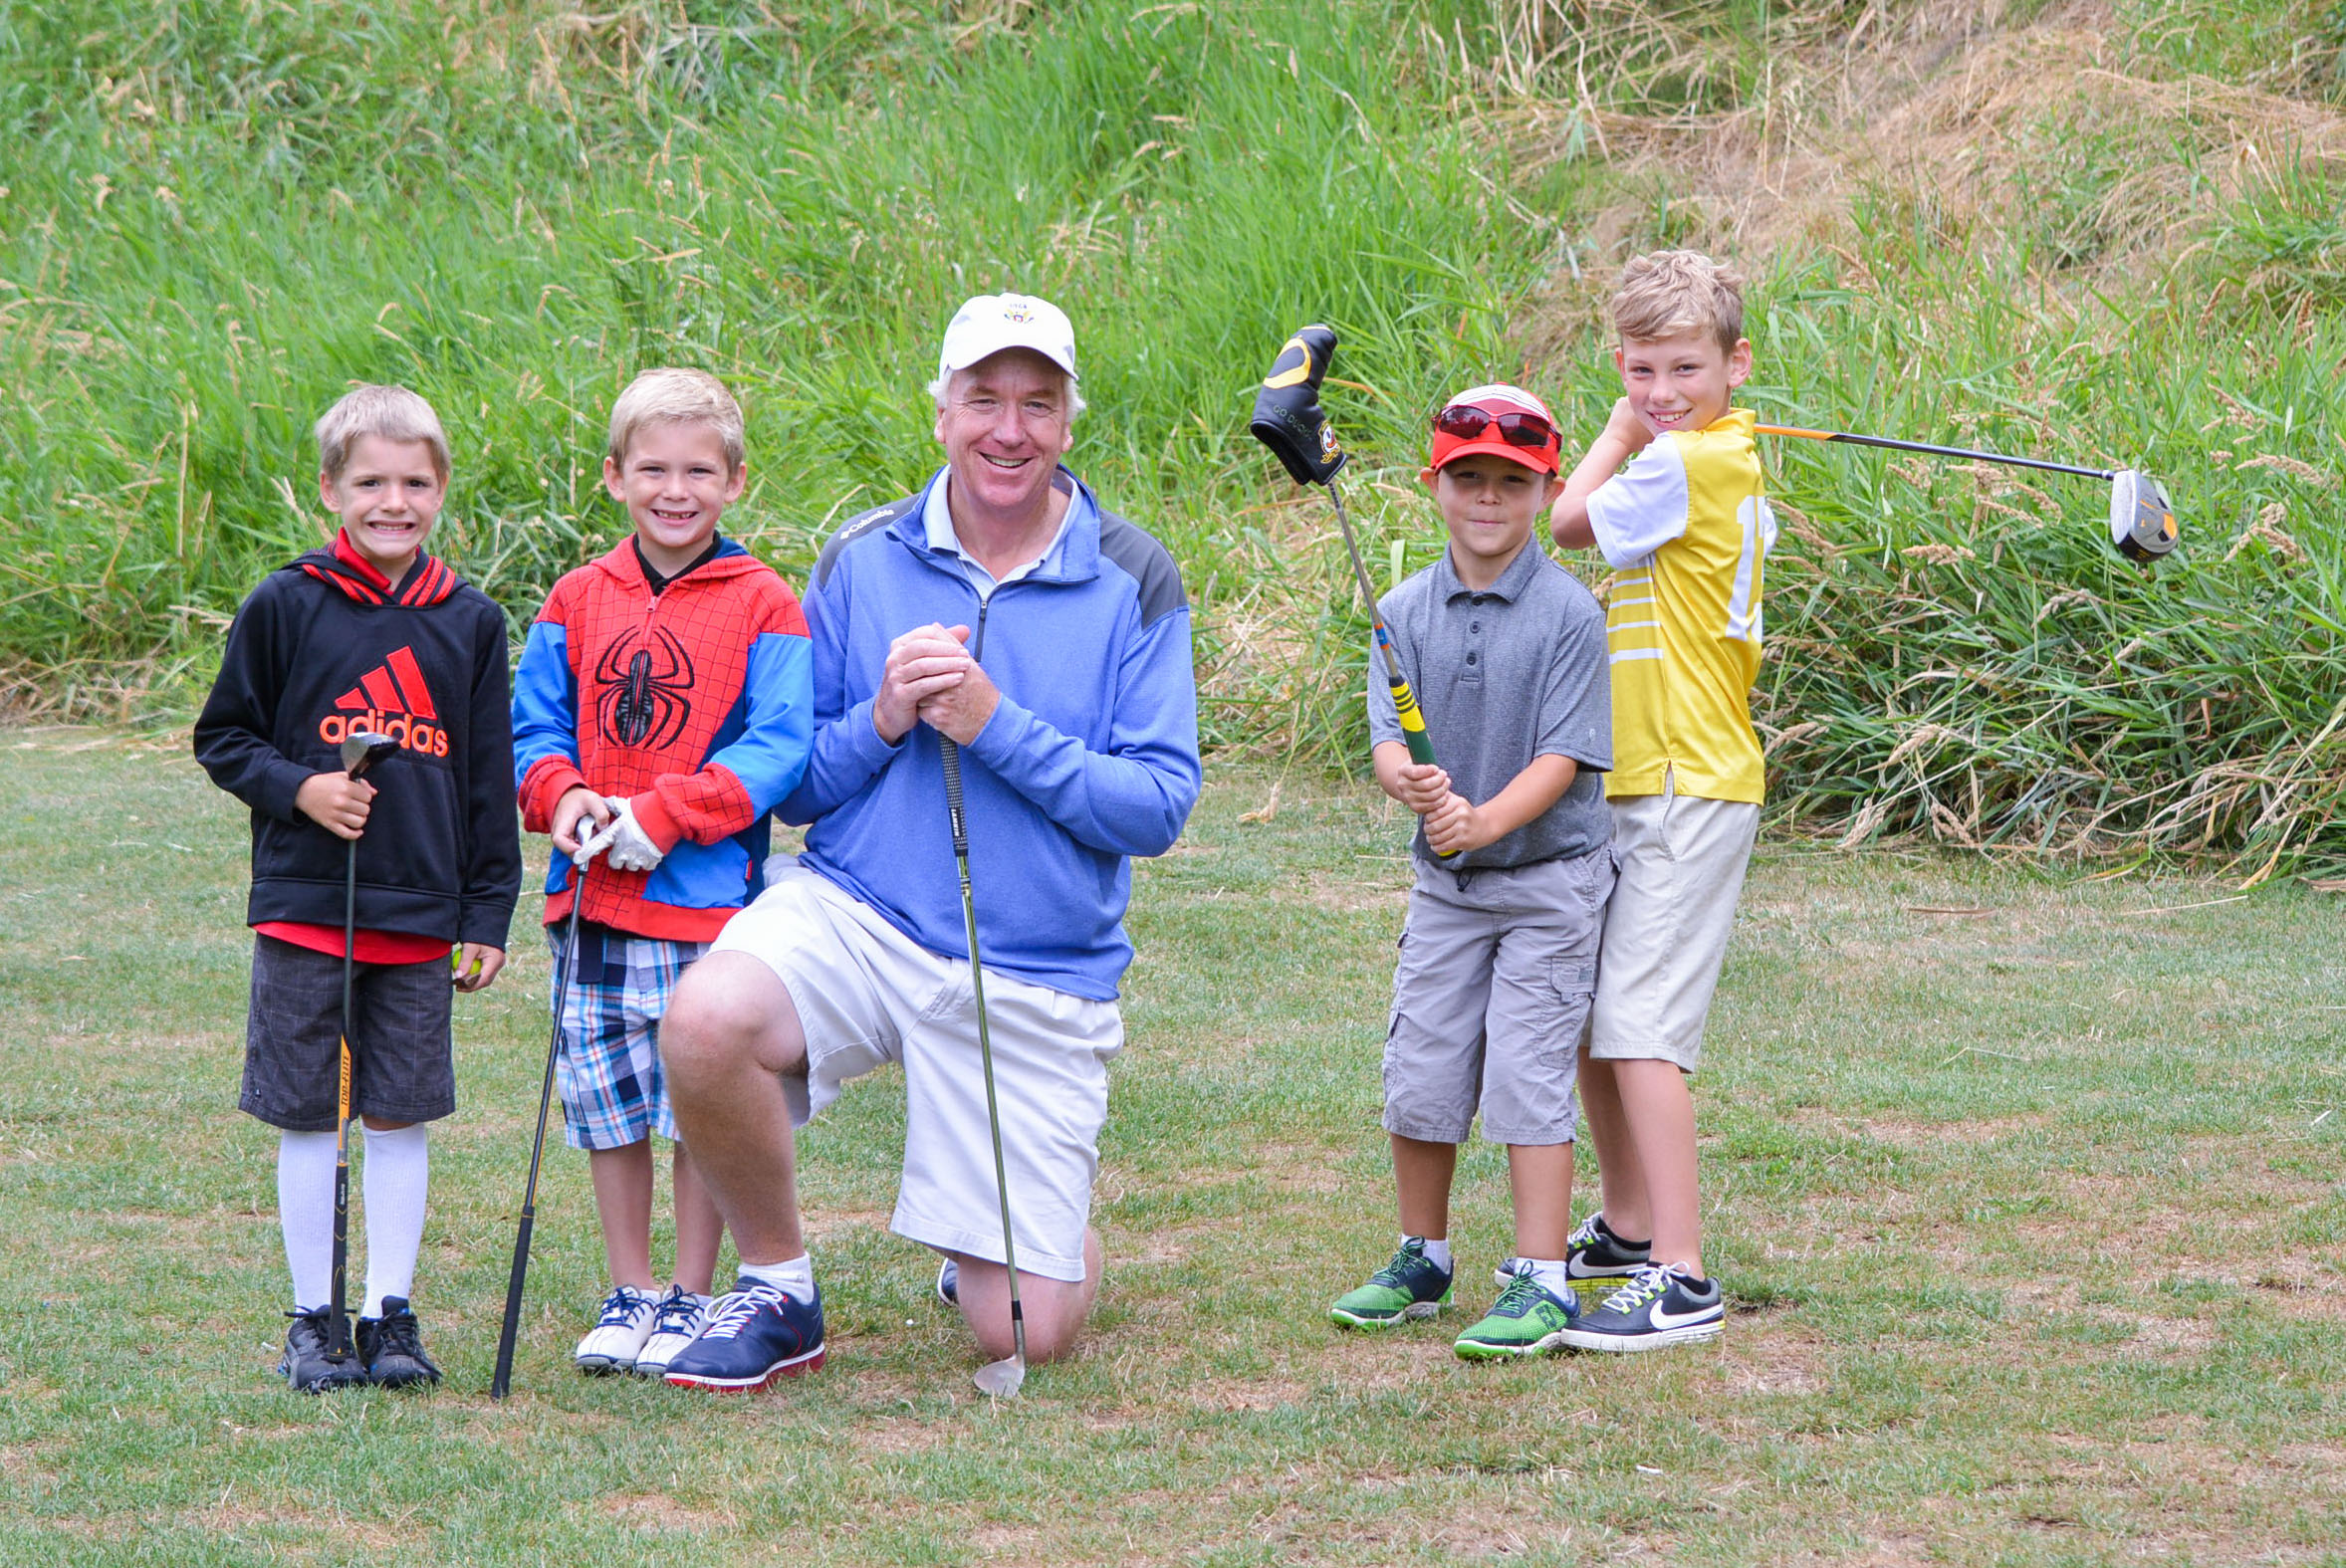 David Jacobsen: Still giving back to Oregon Junior Golf